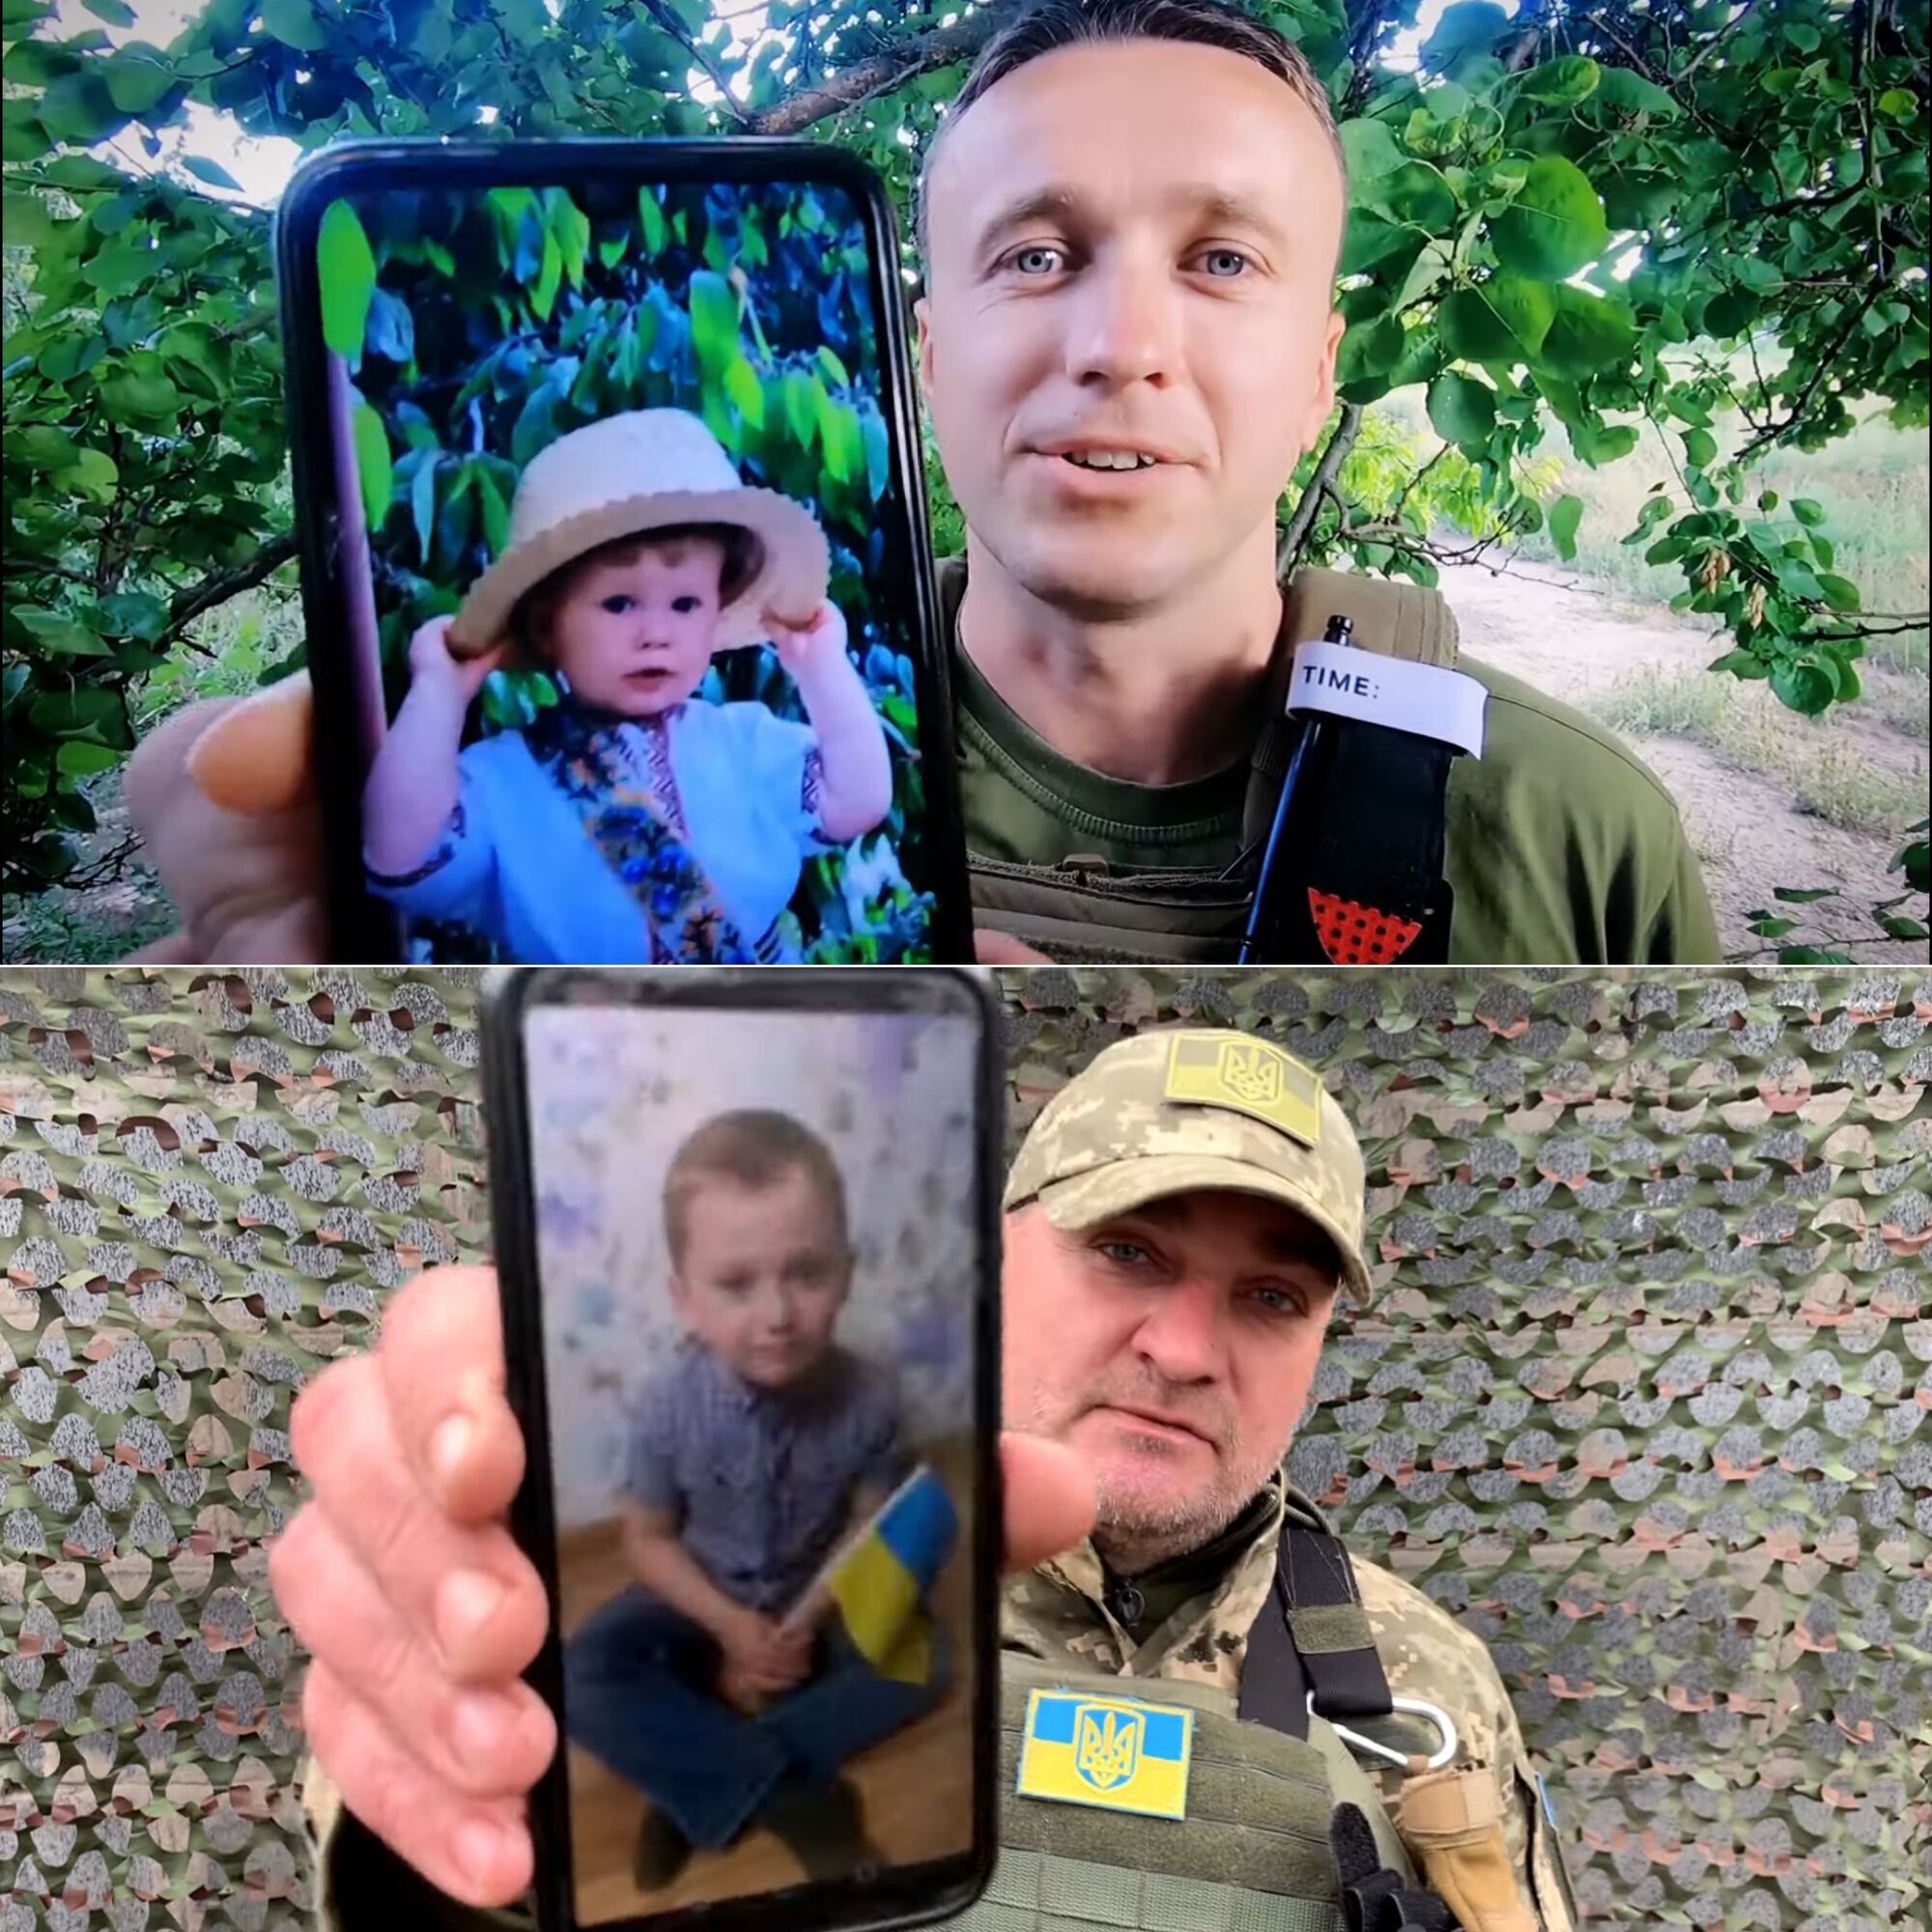 "Невозможно не плакать": украинцев растрогала песня о дочери от певицы KOLA и воина Павла Вышебабы. Видео